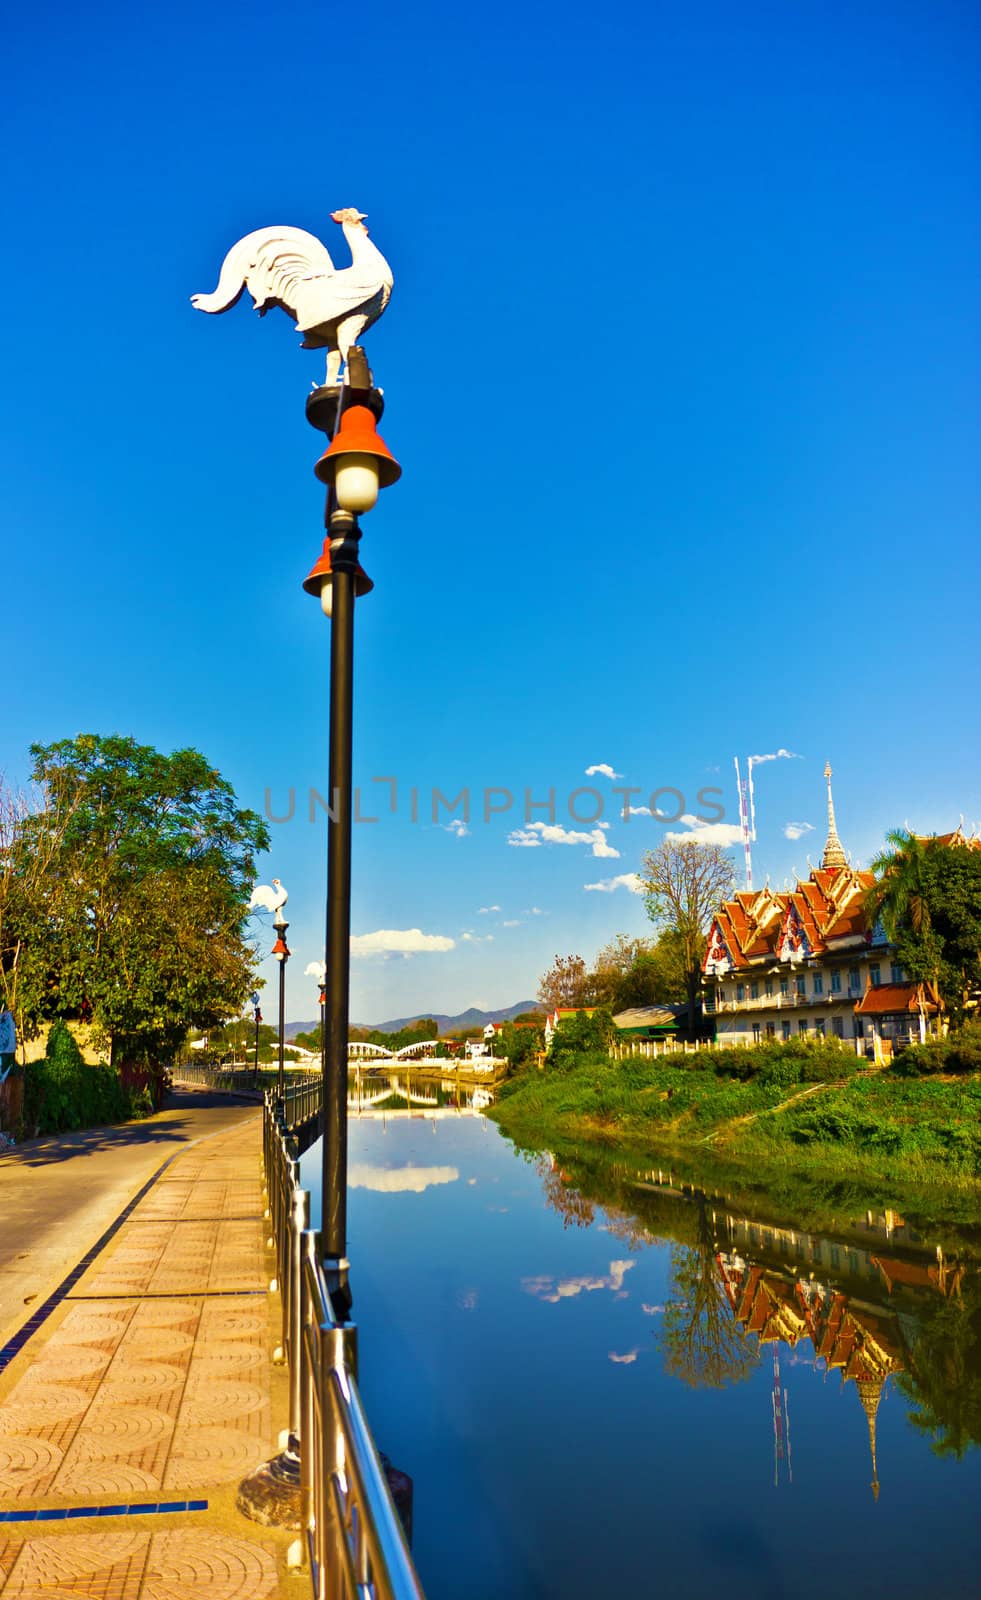 light pole on blue sky background by sutipp11